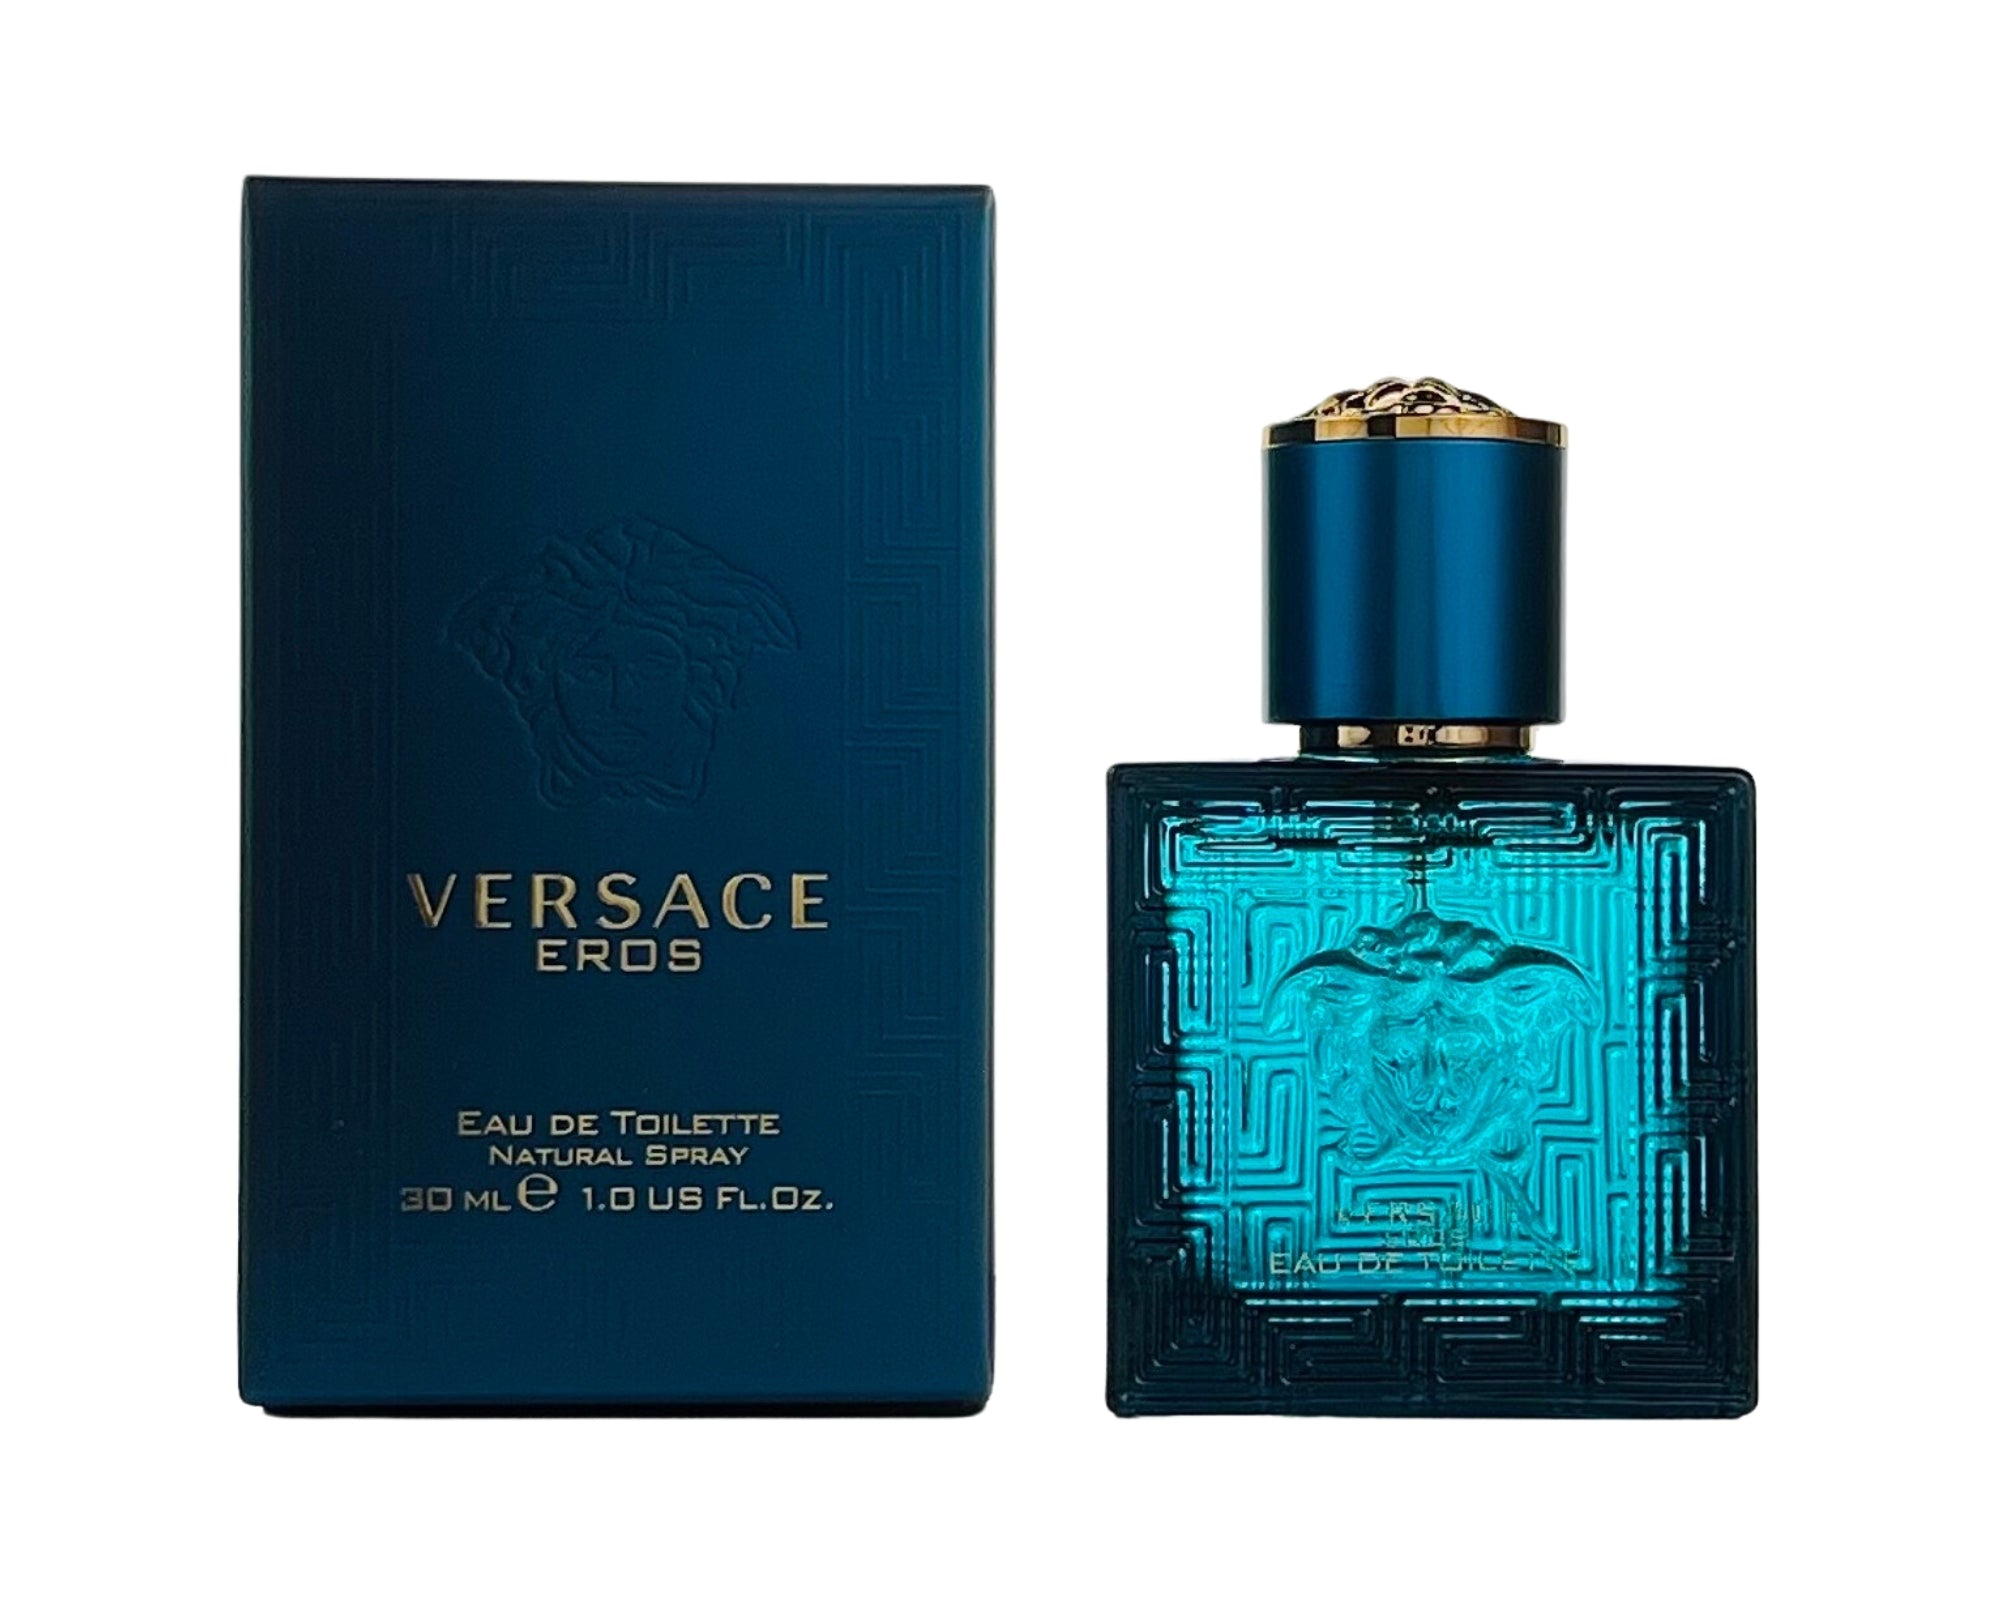 Versace Eros Eau de Parfum Spray 3.4oz Men